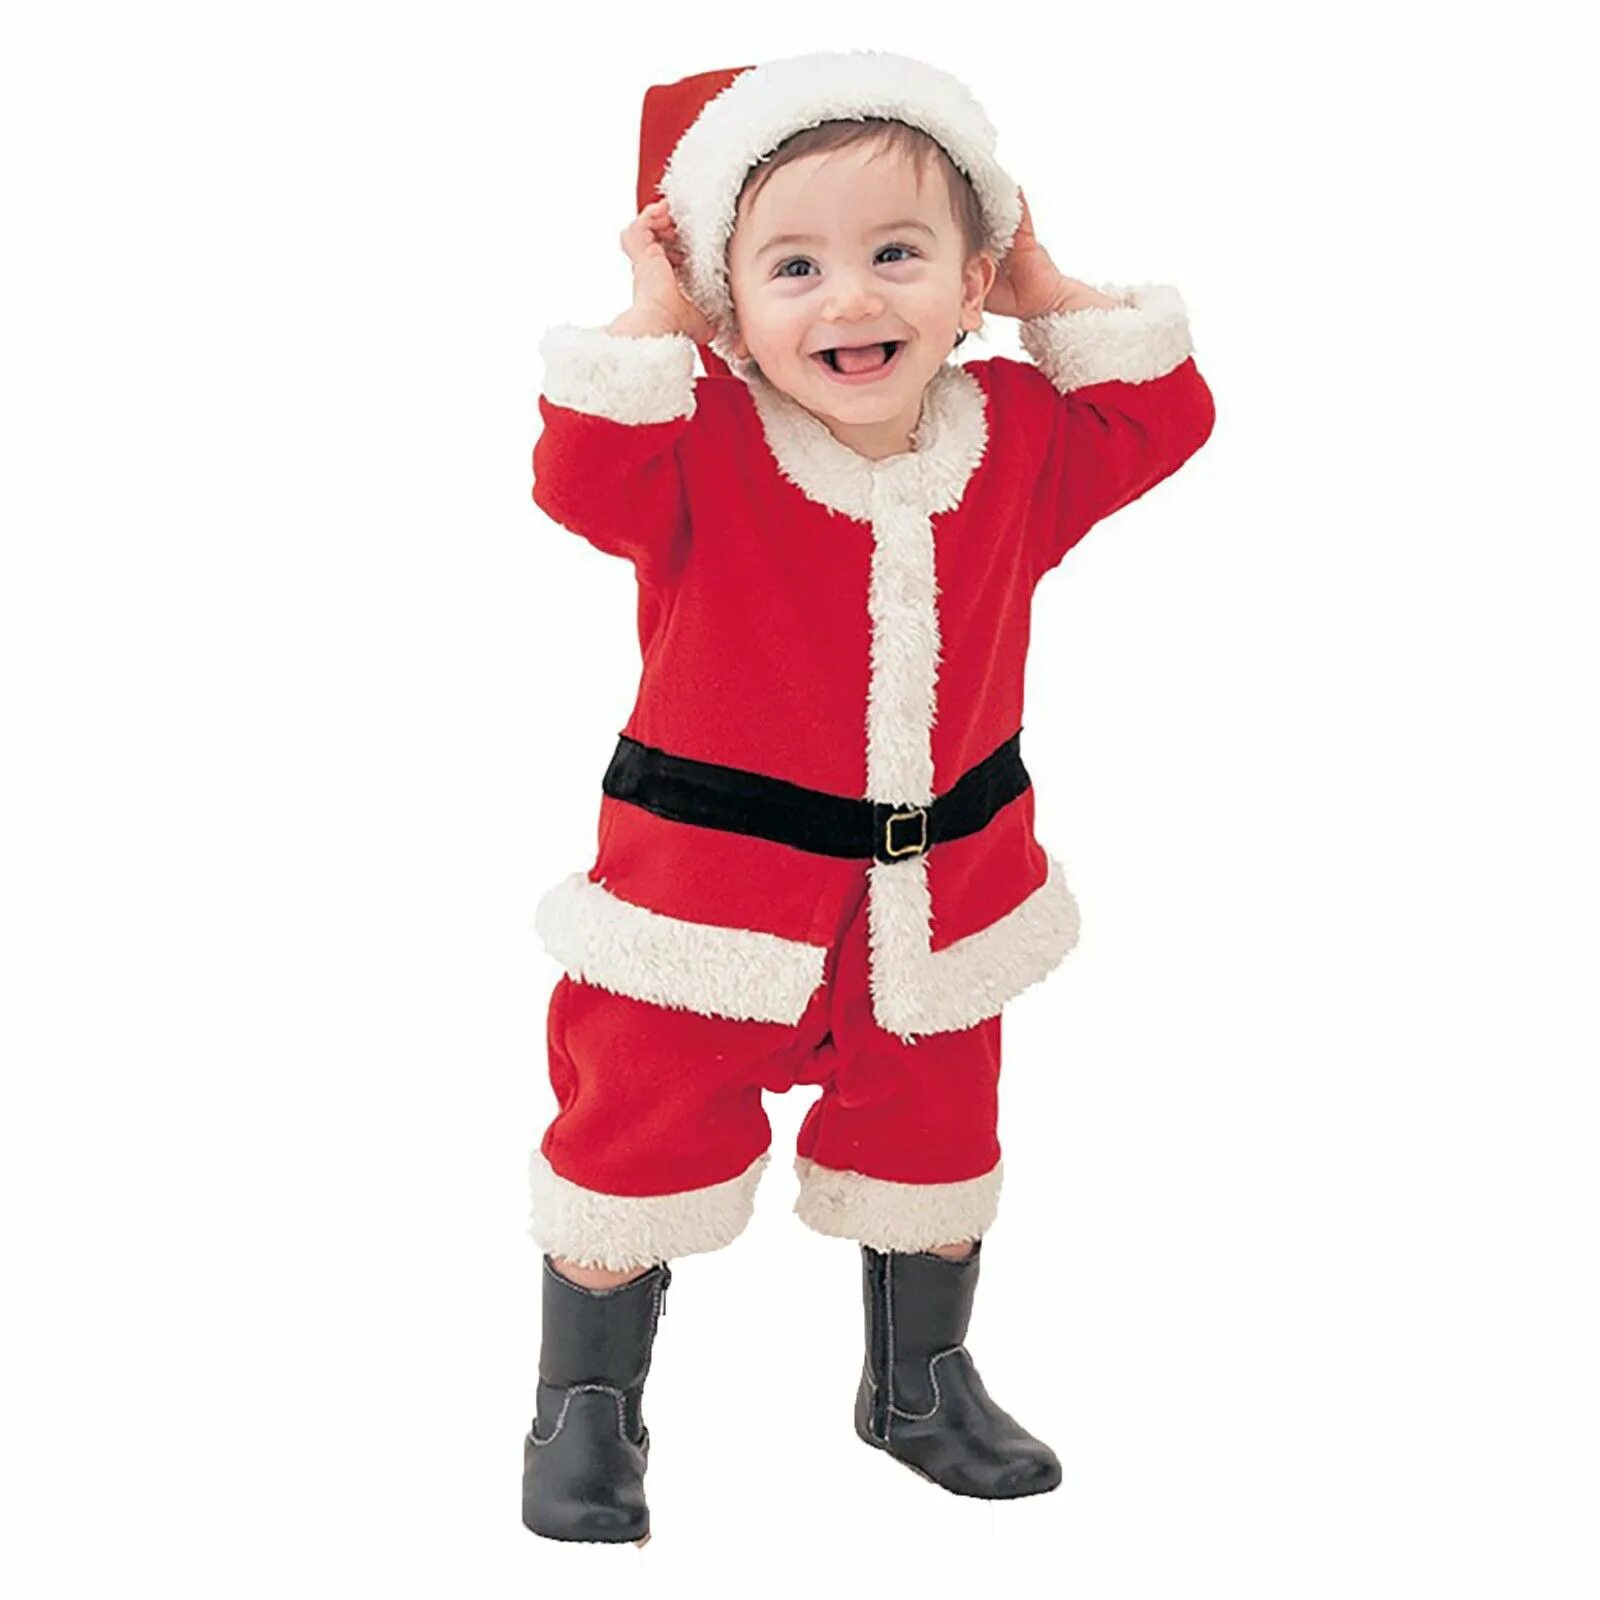 Нового костюмы для детей. Костюм Санты Клауса для детей. Костюм Санта Клауса для мальчика. Костюм малыша Санта Клауса. Новогодний костюм Санты для мальчика.